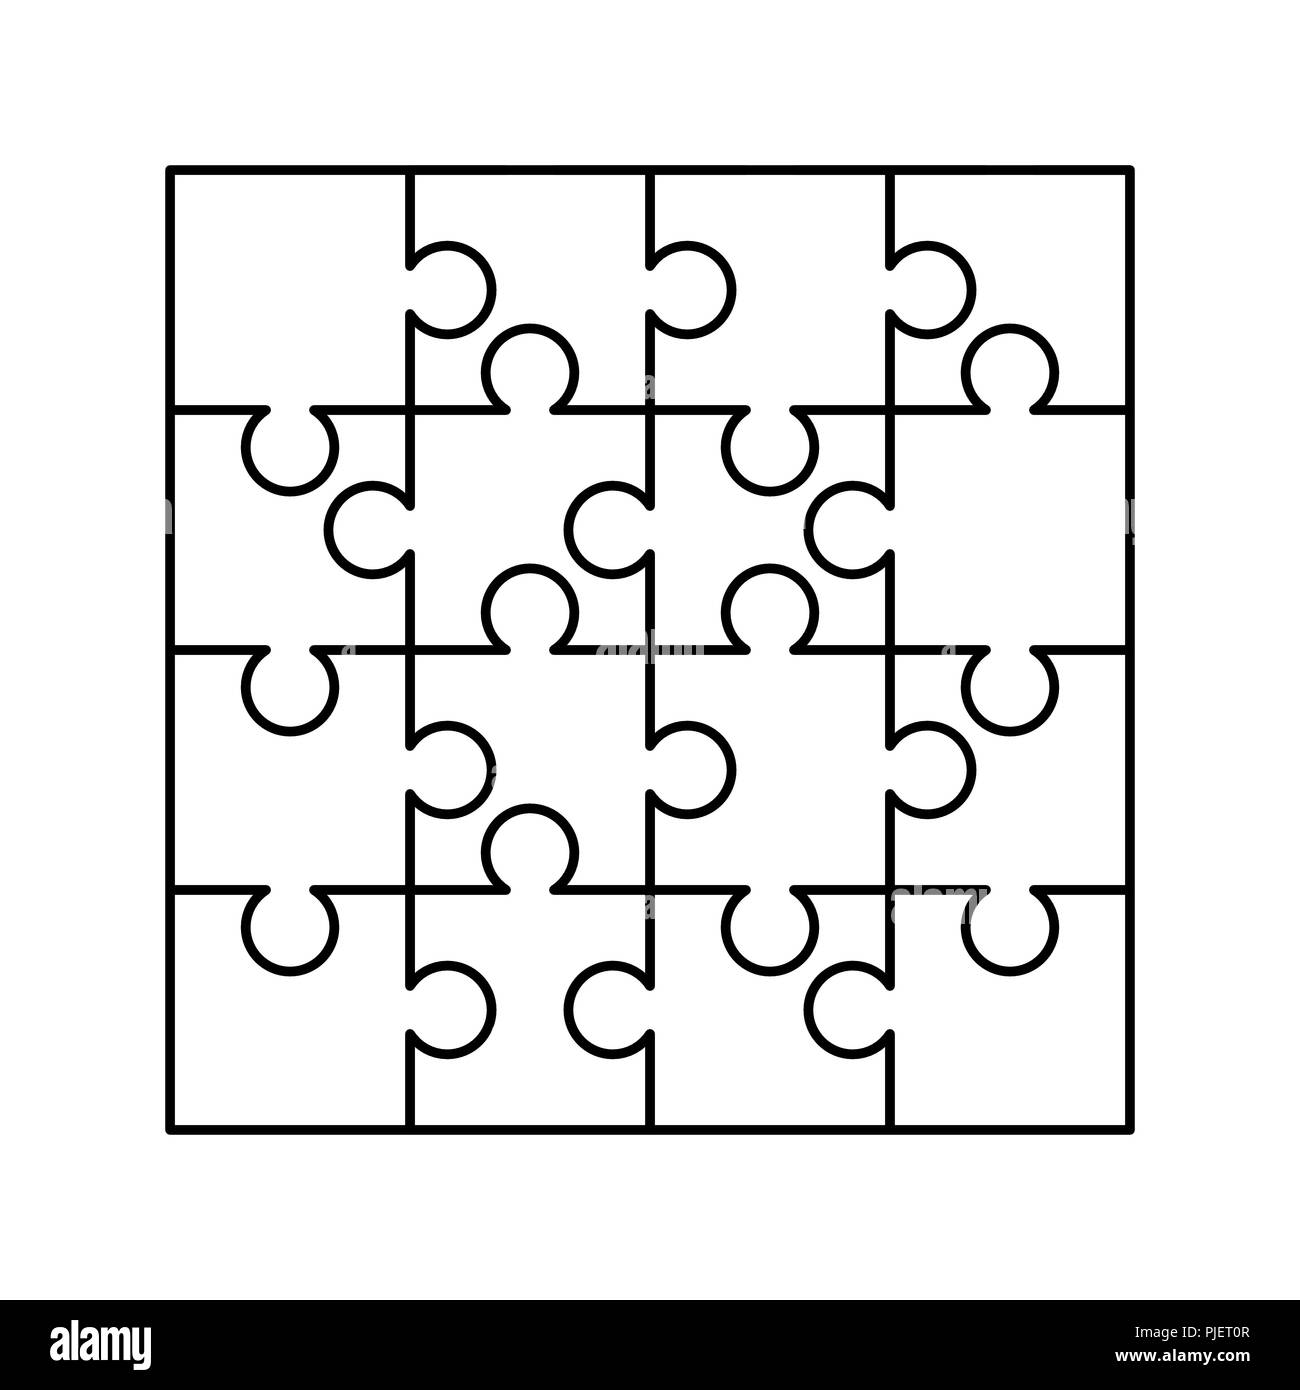 Jigsaw puzzle pieces in transparent Banque d'images détourées - Alamy